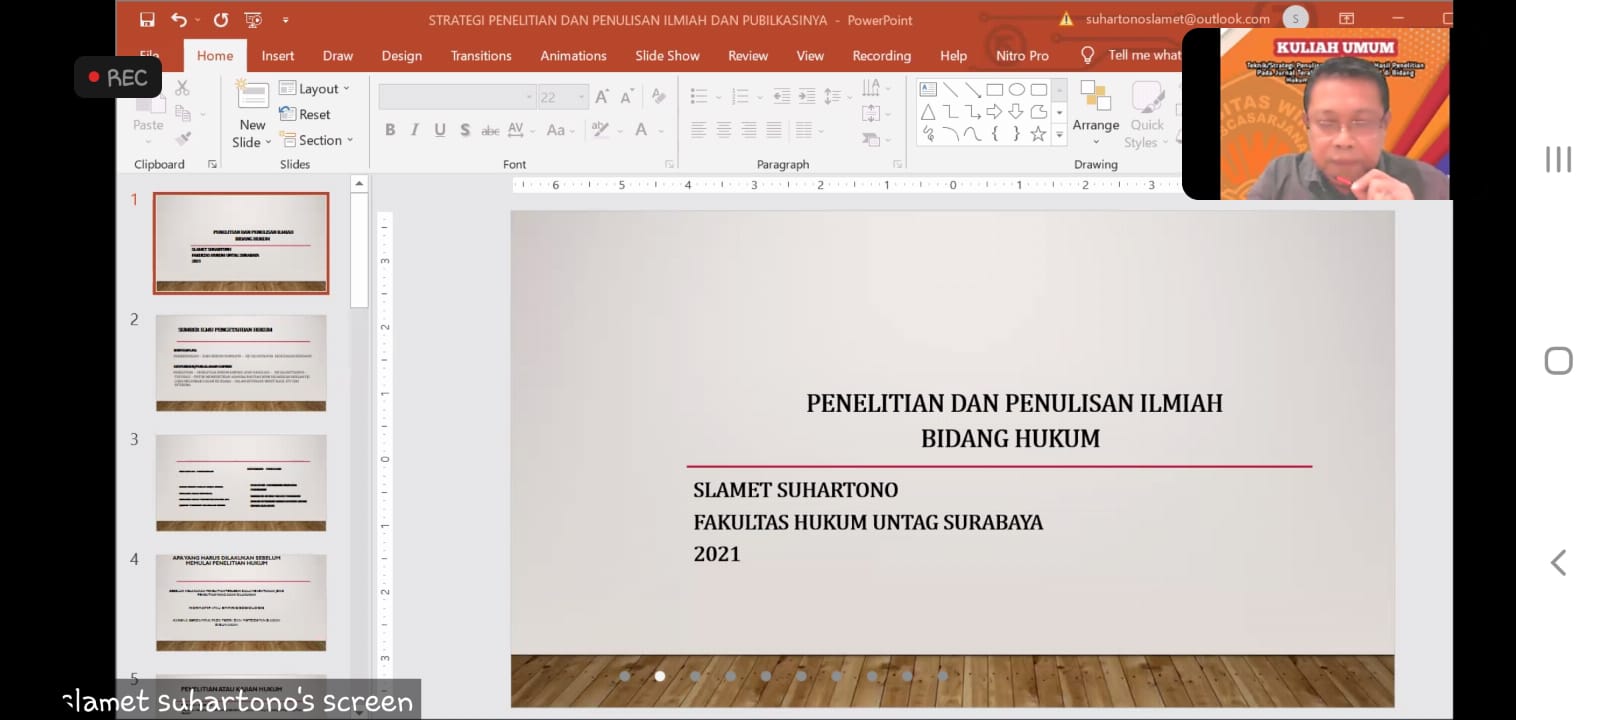 Dekan FH Untag Surabaya Slamet Suhartono mengisi Materi Teknik/Strategis Penulisan